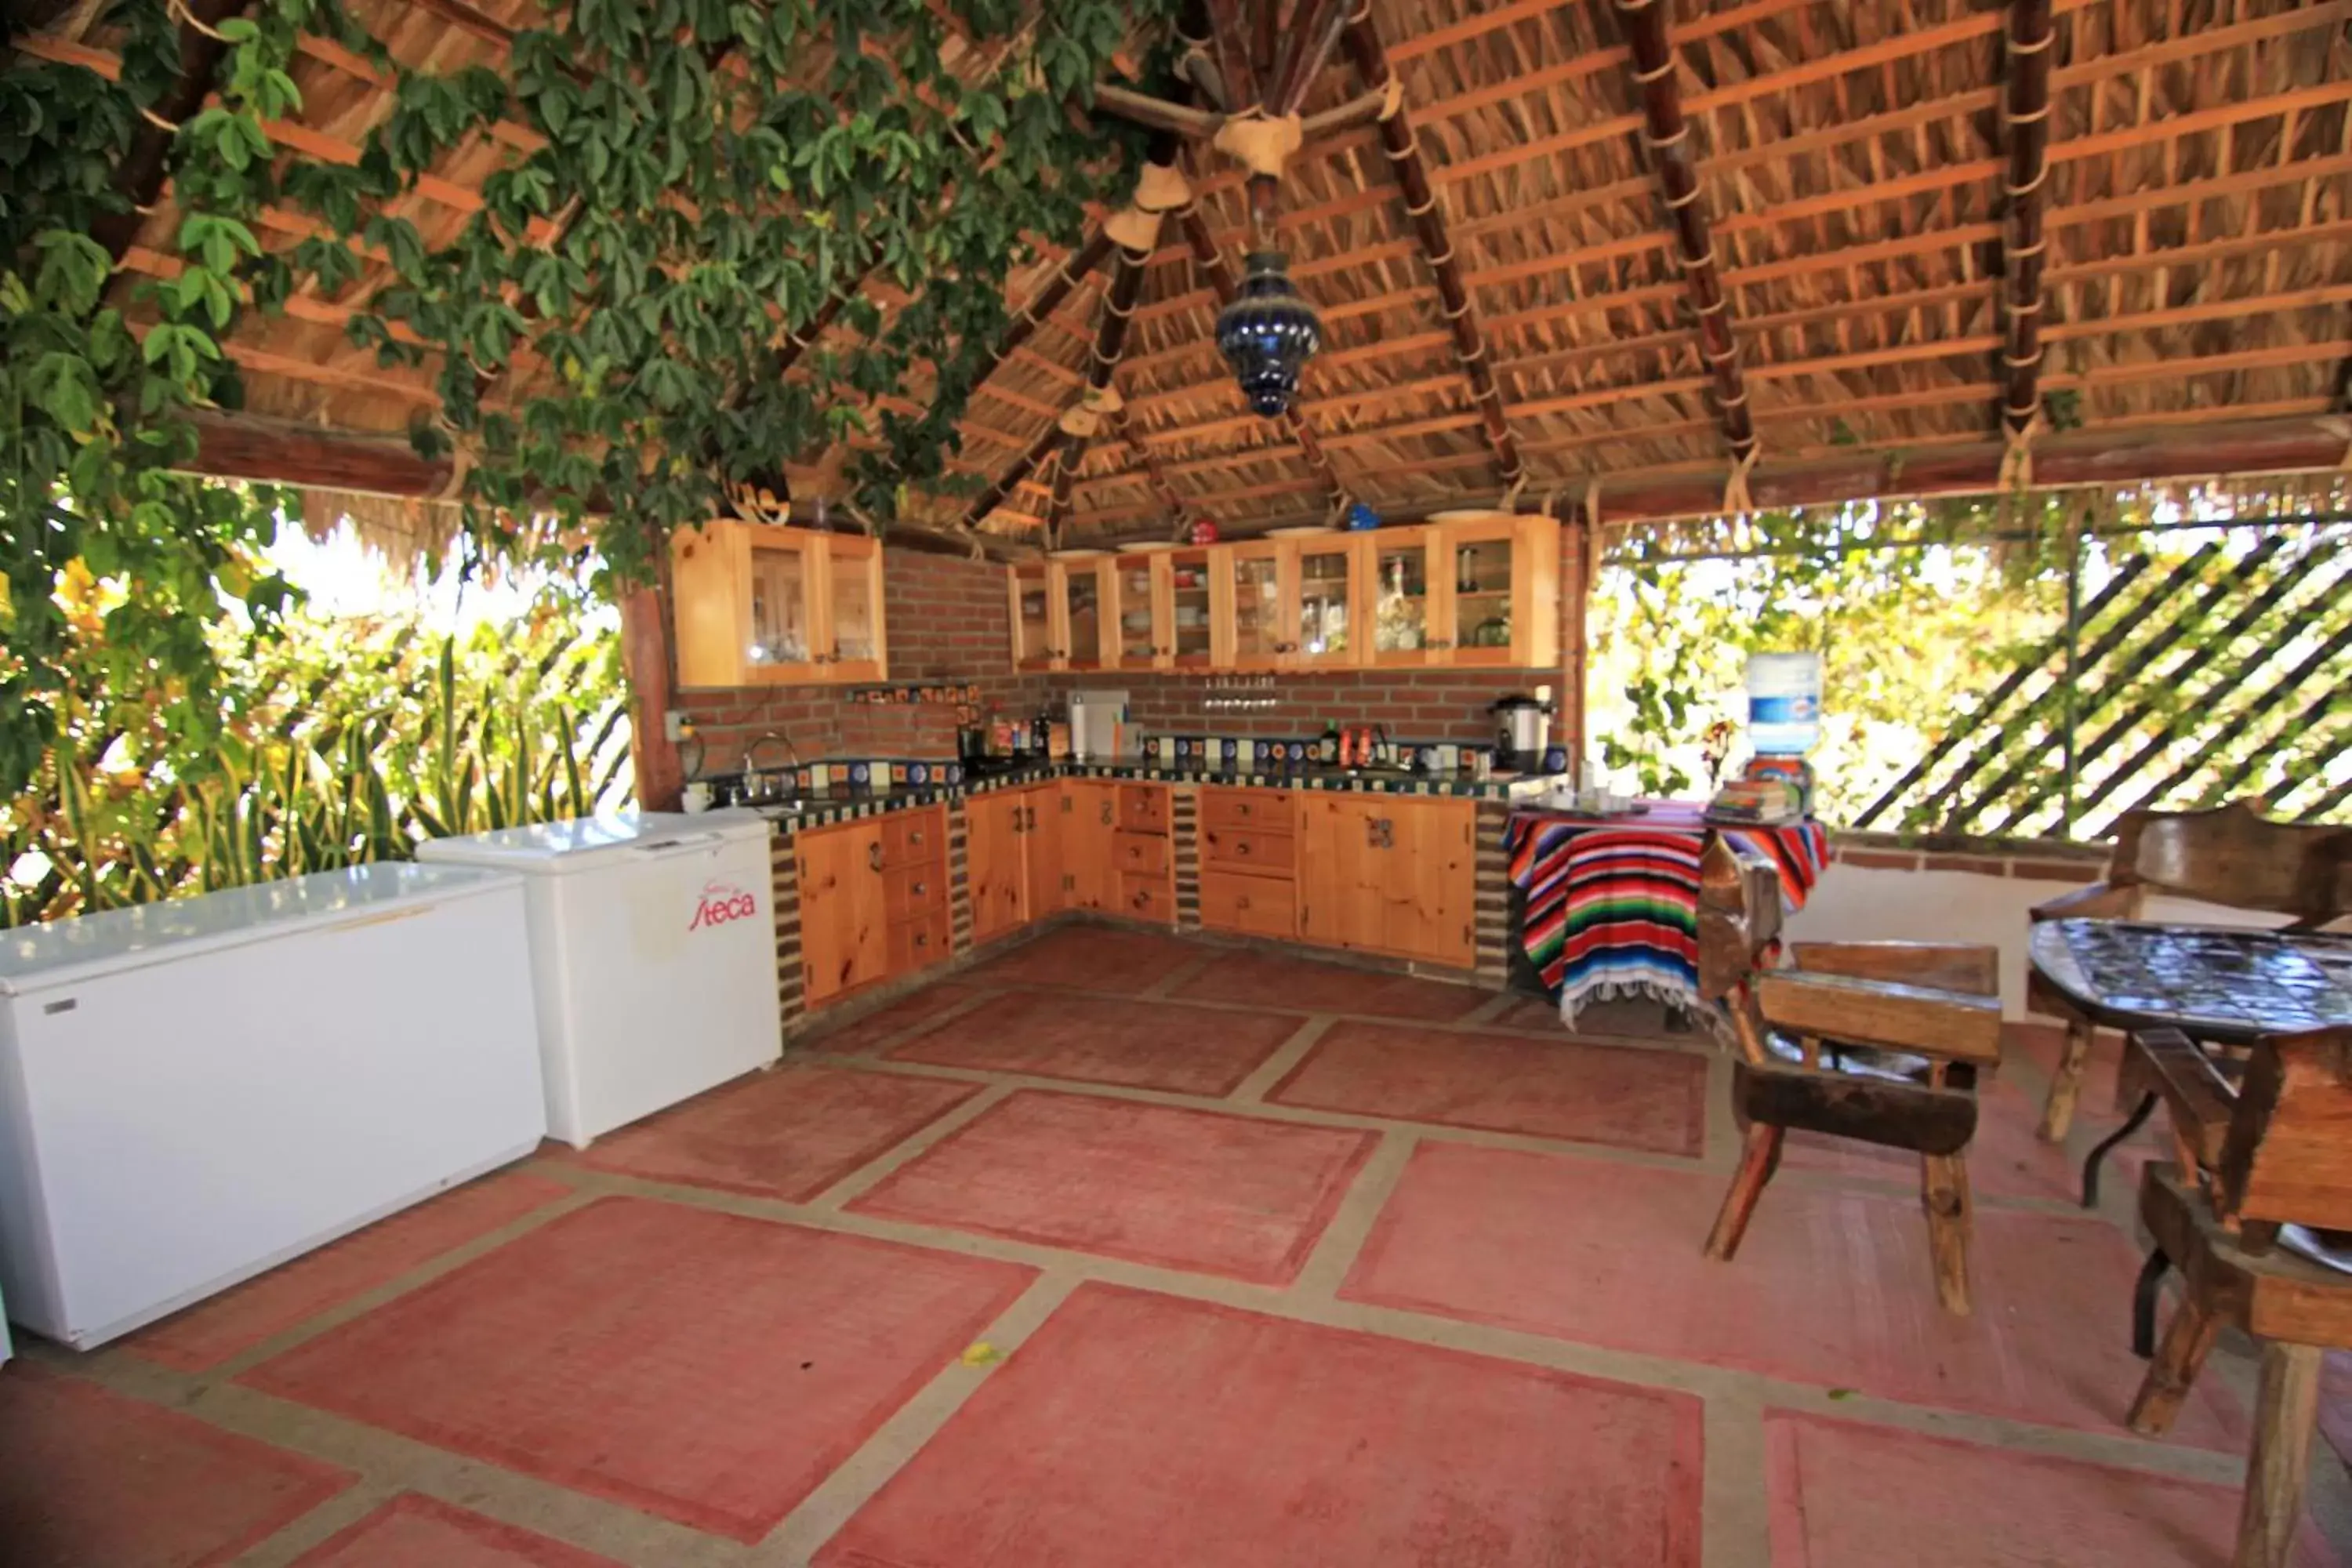 Communal kitchen in Olas de Cerritos